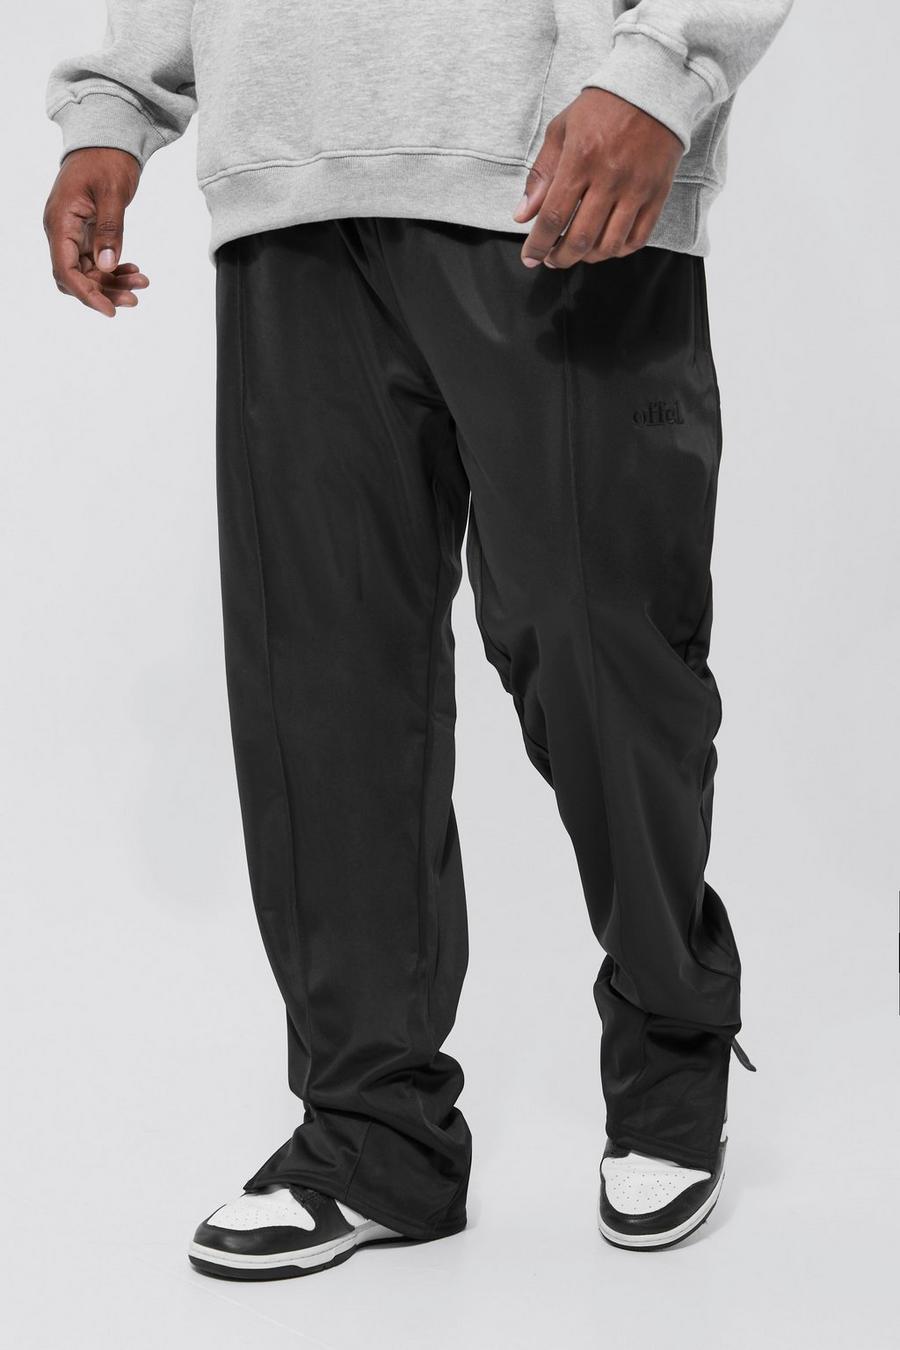 שחור black מכנסי טרנינג מבד טריקו עם קפל, שסע במכפלת וכיתוב Offcl, מידות גדולות